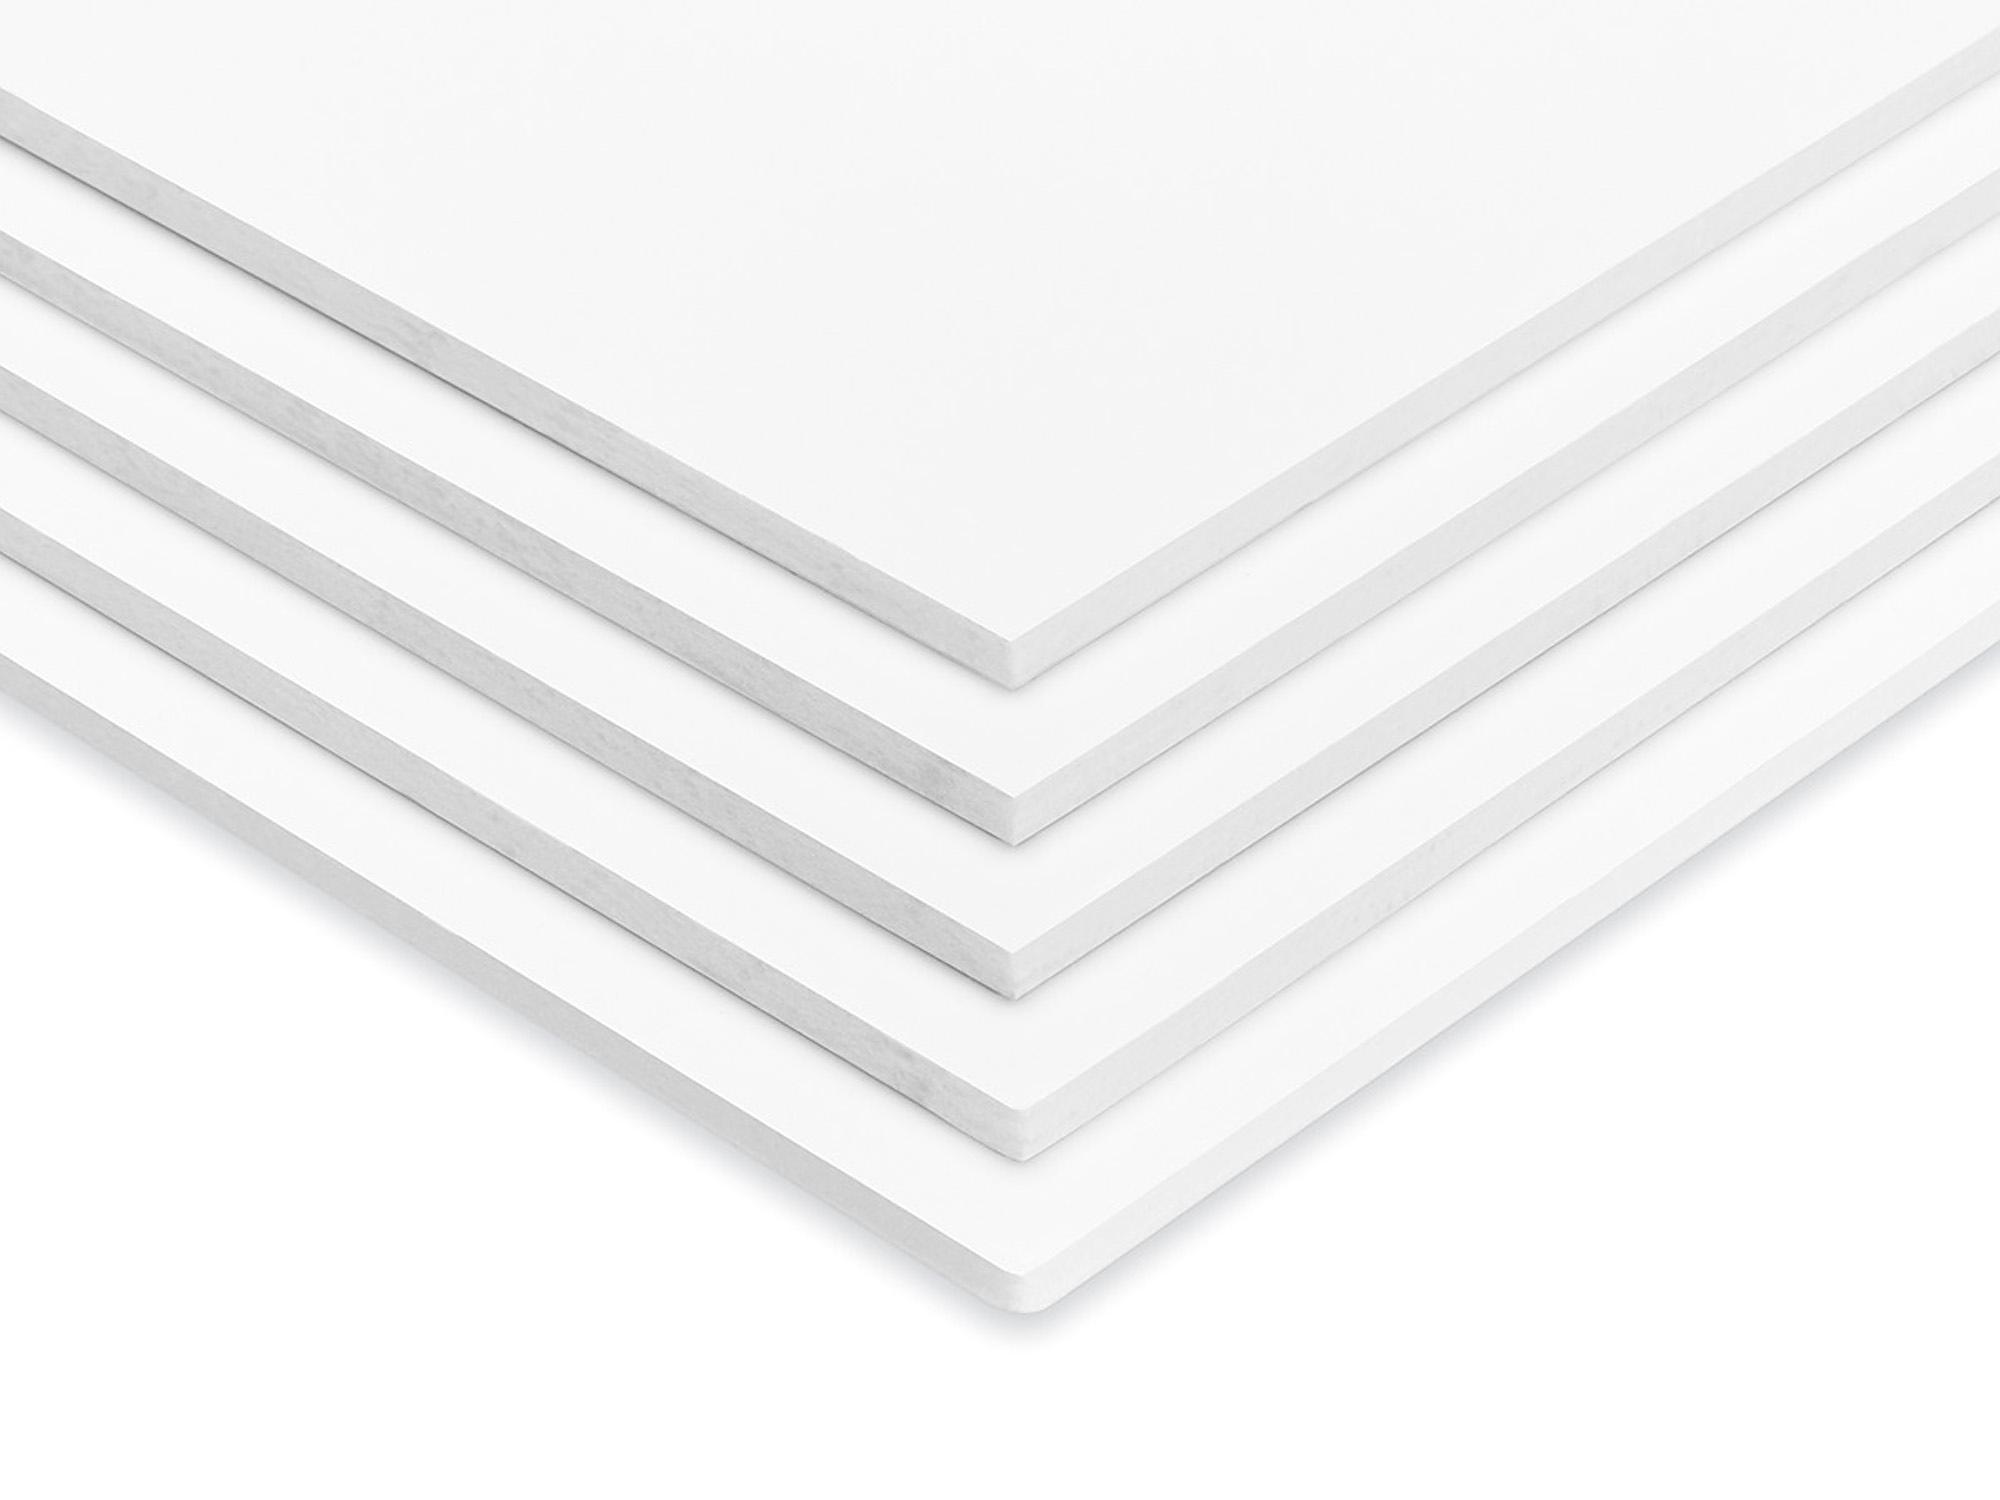 Foam Core Board - 48 x 96, White, 1/2 Thick - ULINE - Carton of 10 - S-13722